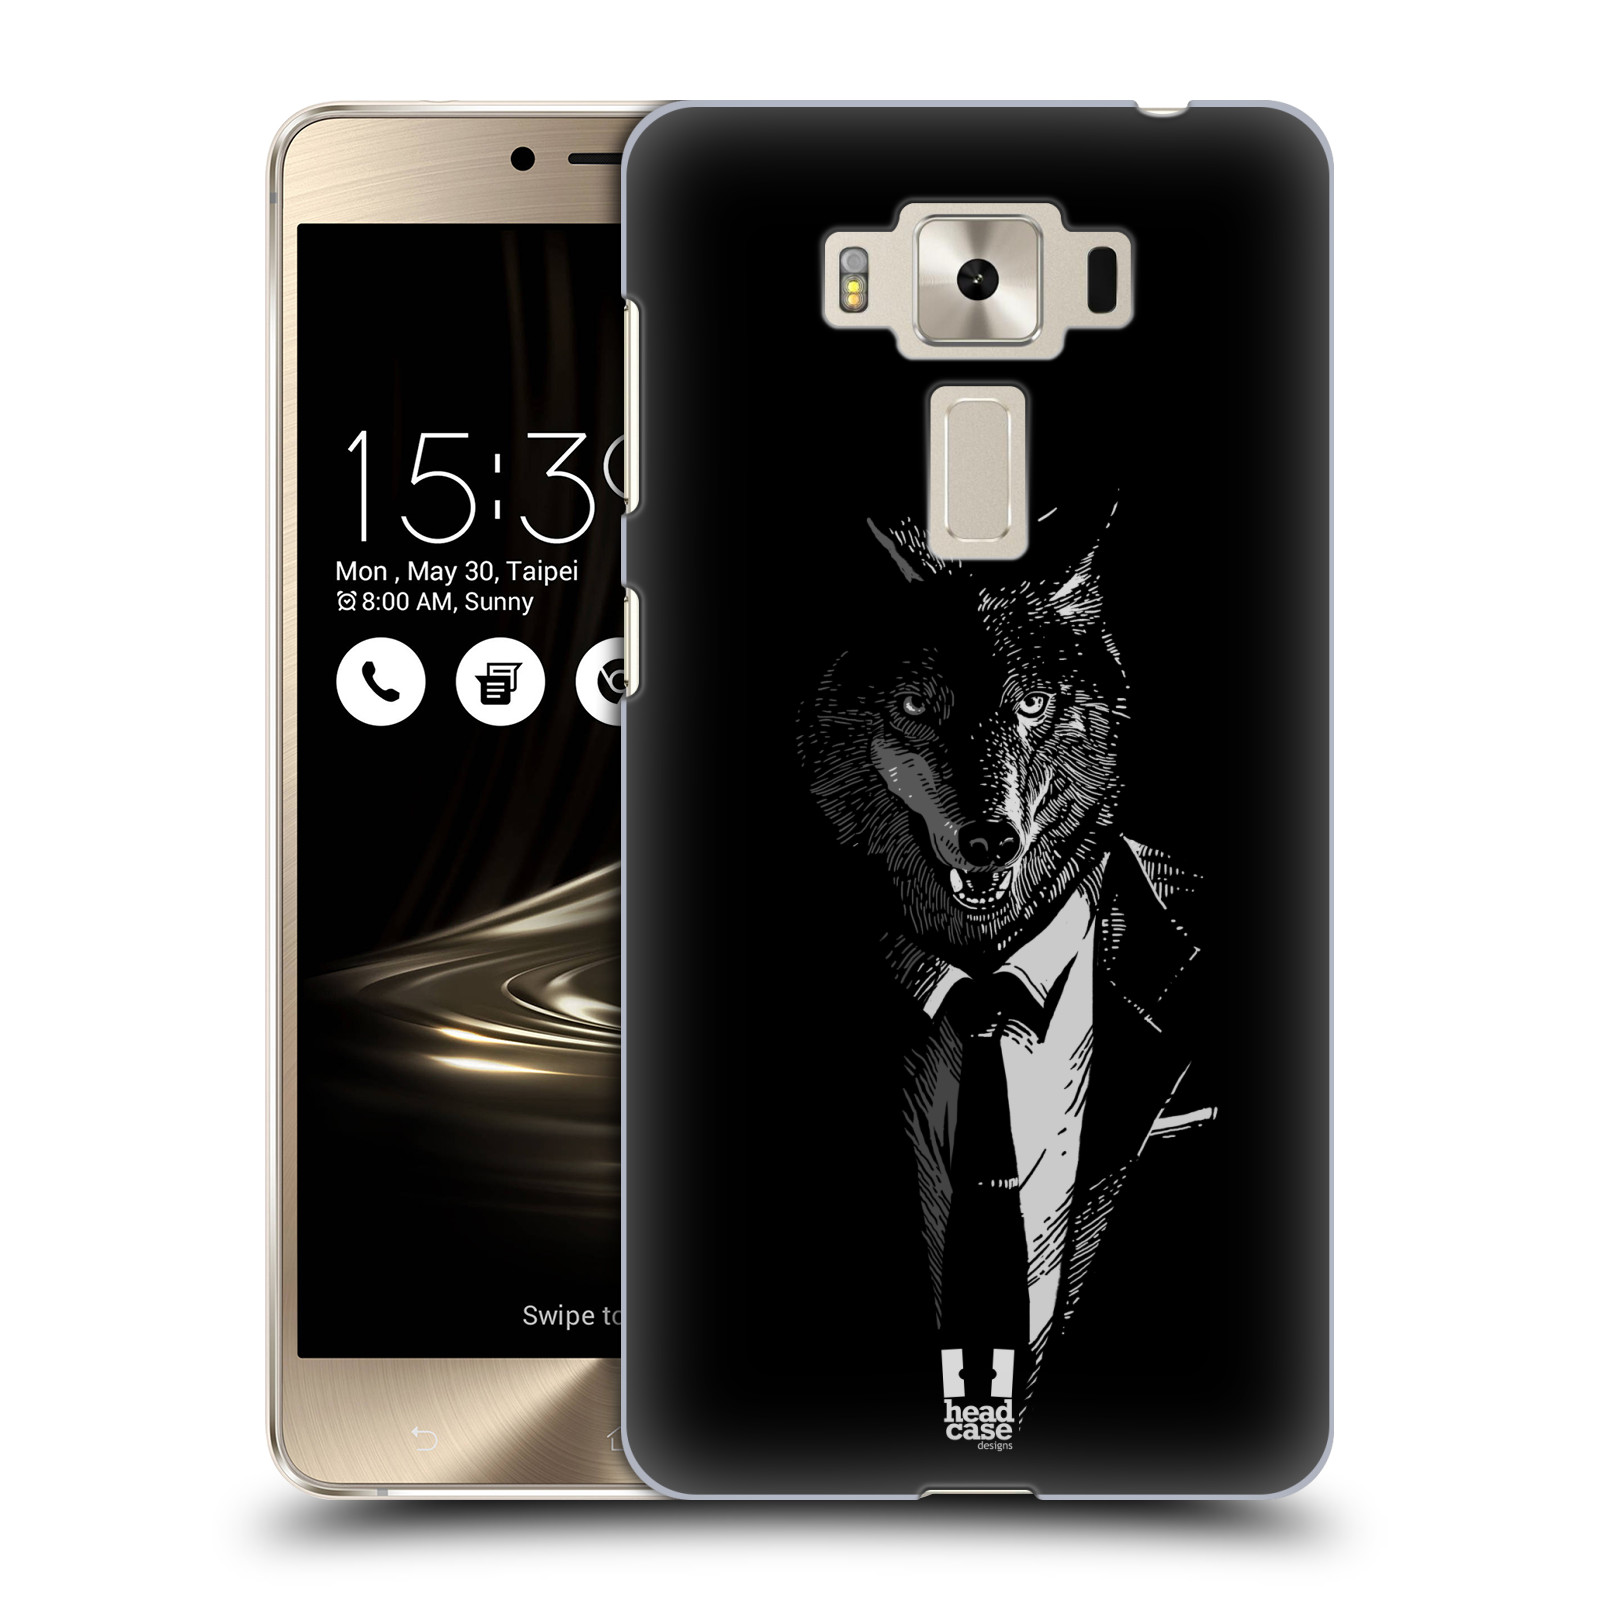 HEAD CASE plastový obal na mobil Asus Zenfone 3 DELUXE ZS550KL vzor Zvíře v obleku vlk